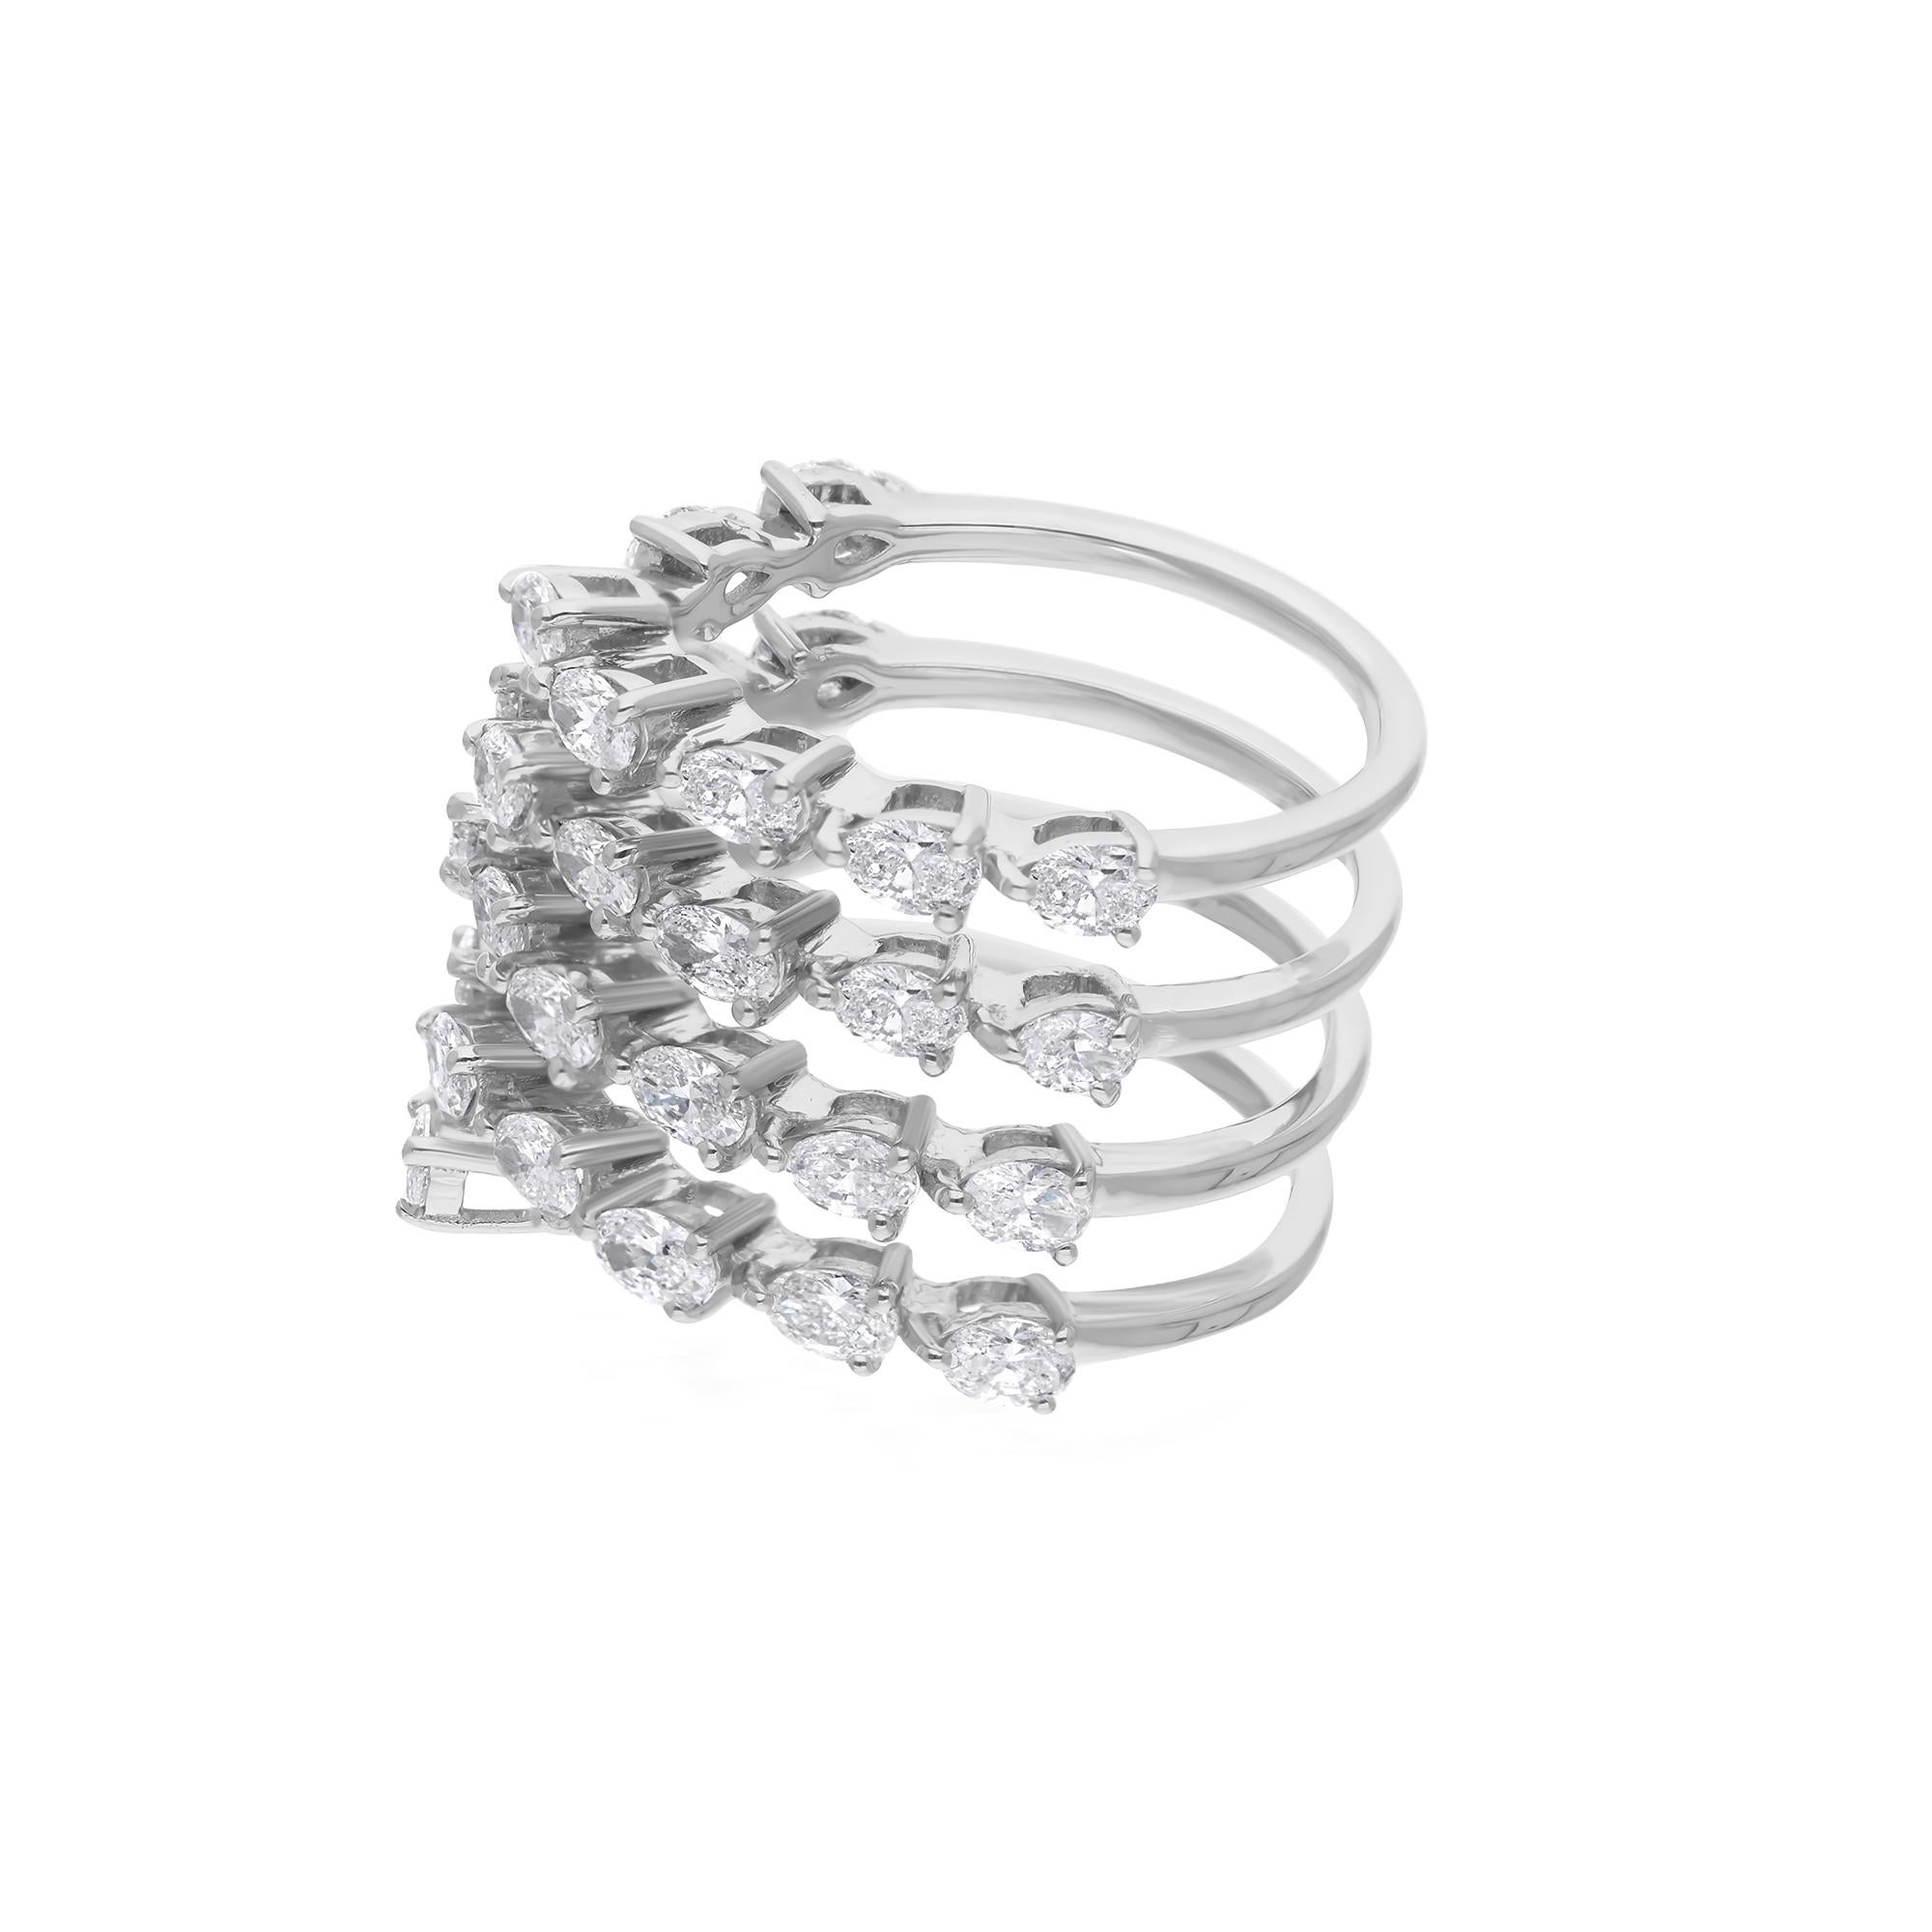 Dieser elegant gestaltete Ring hat einen atemberaubenden Diamanten im Ovalschliff als Herzstück, der mit seiner außergewöhnlichen Klarheit und seinem Funkeln Brillanz und Anziehungskraft ausstrahlt. Die klassische ovale Form, die für ihren